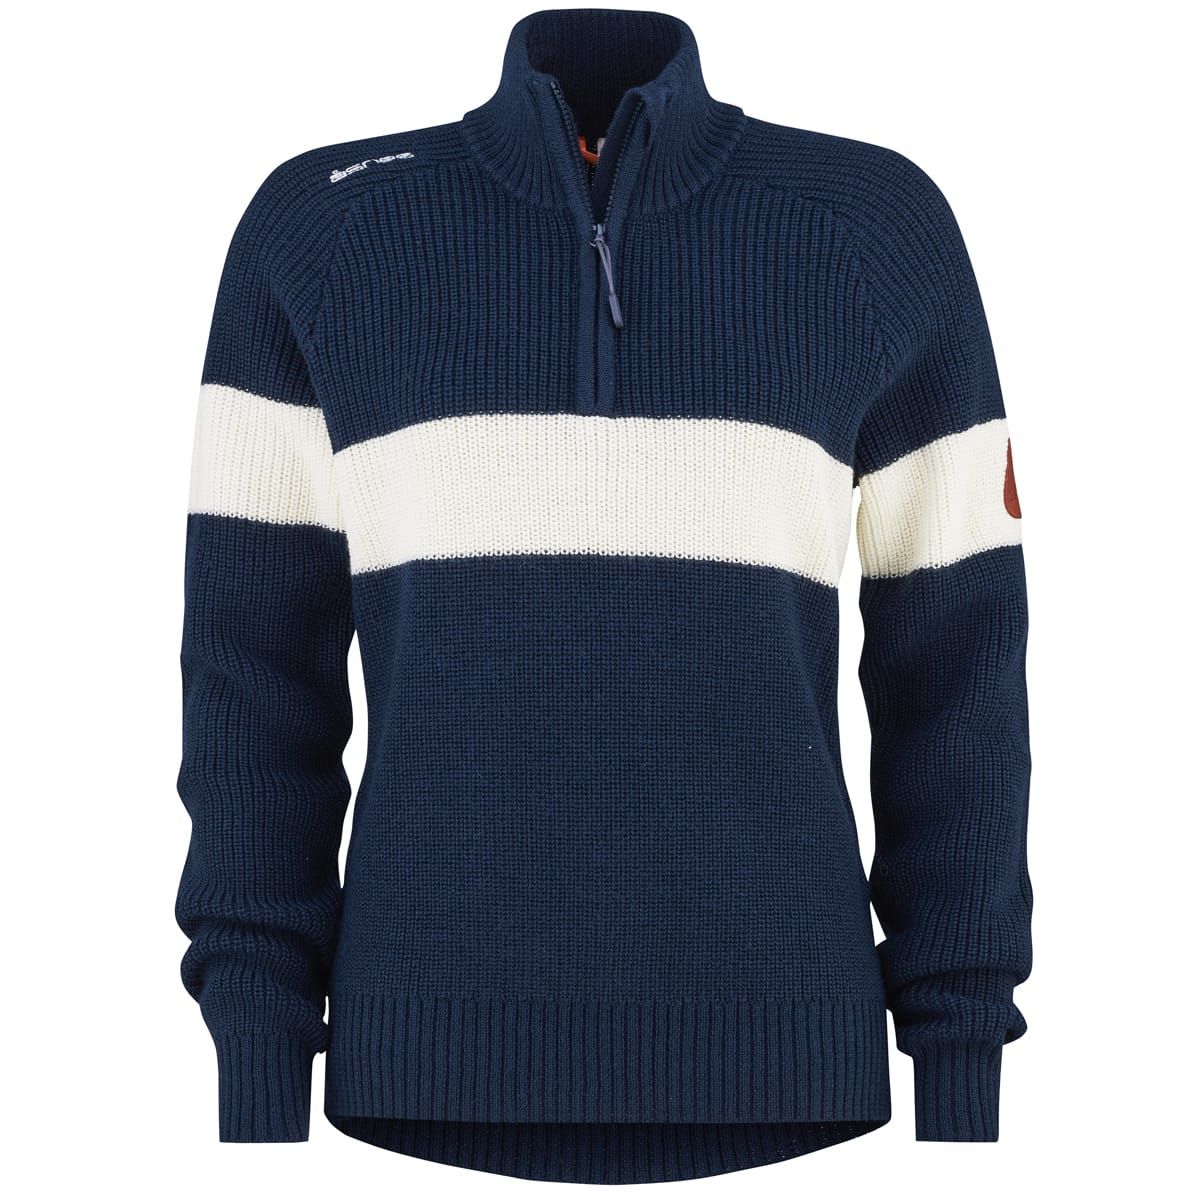 Åsnes Knaus Sweater Wmn Navy Blue